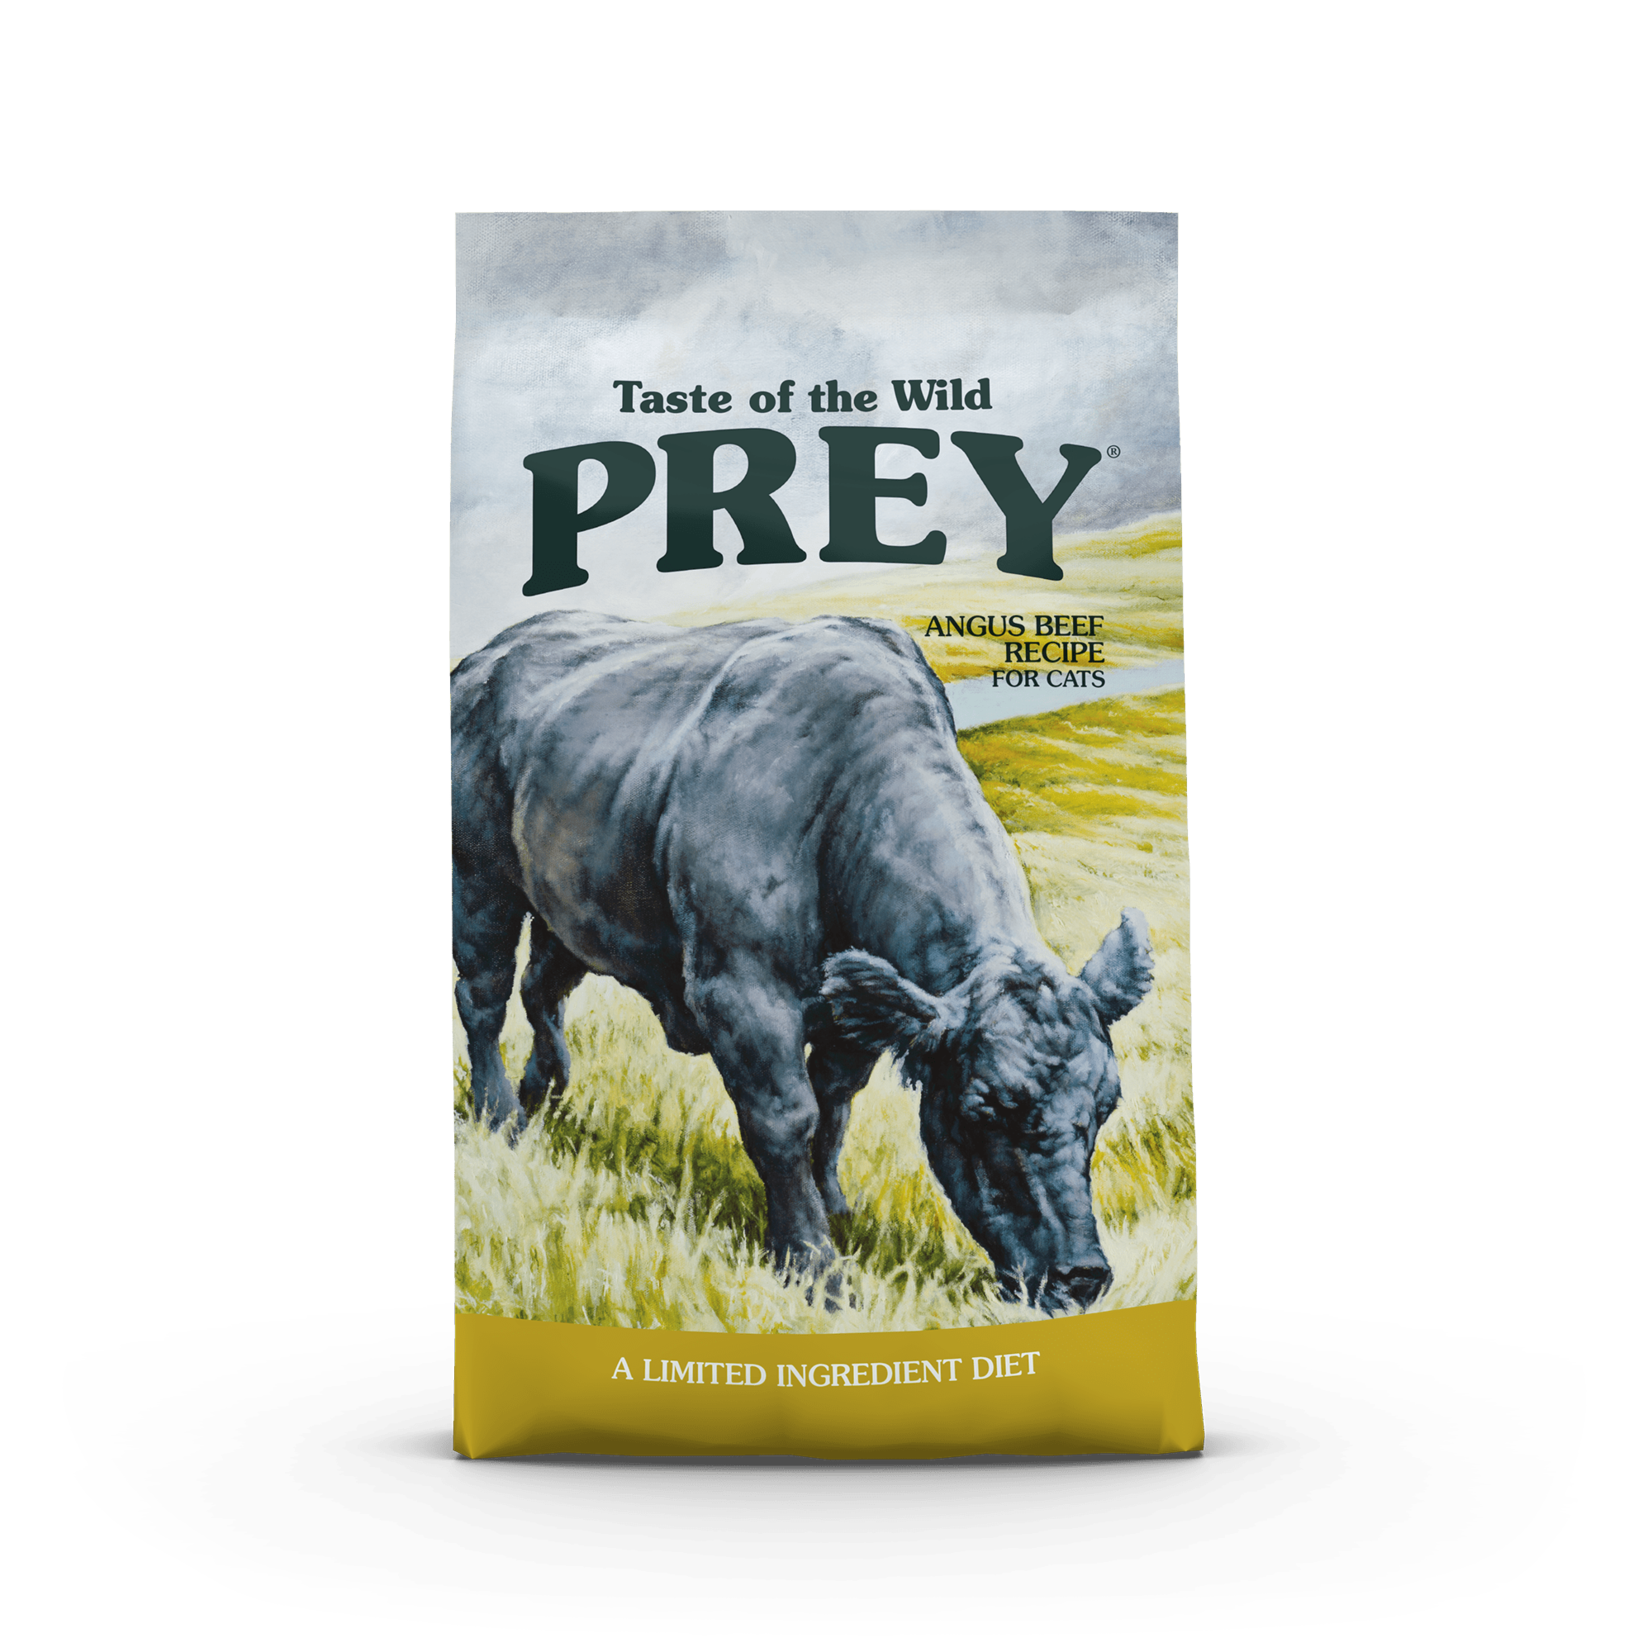 Taste of the Wild PREY Angus Beef Limited Ingredient Dry Cat Food, 6lb bag